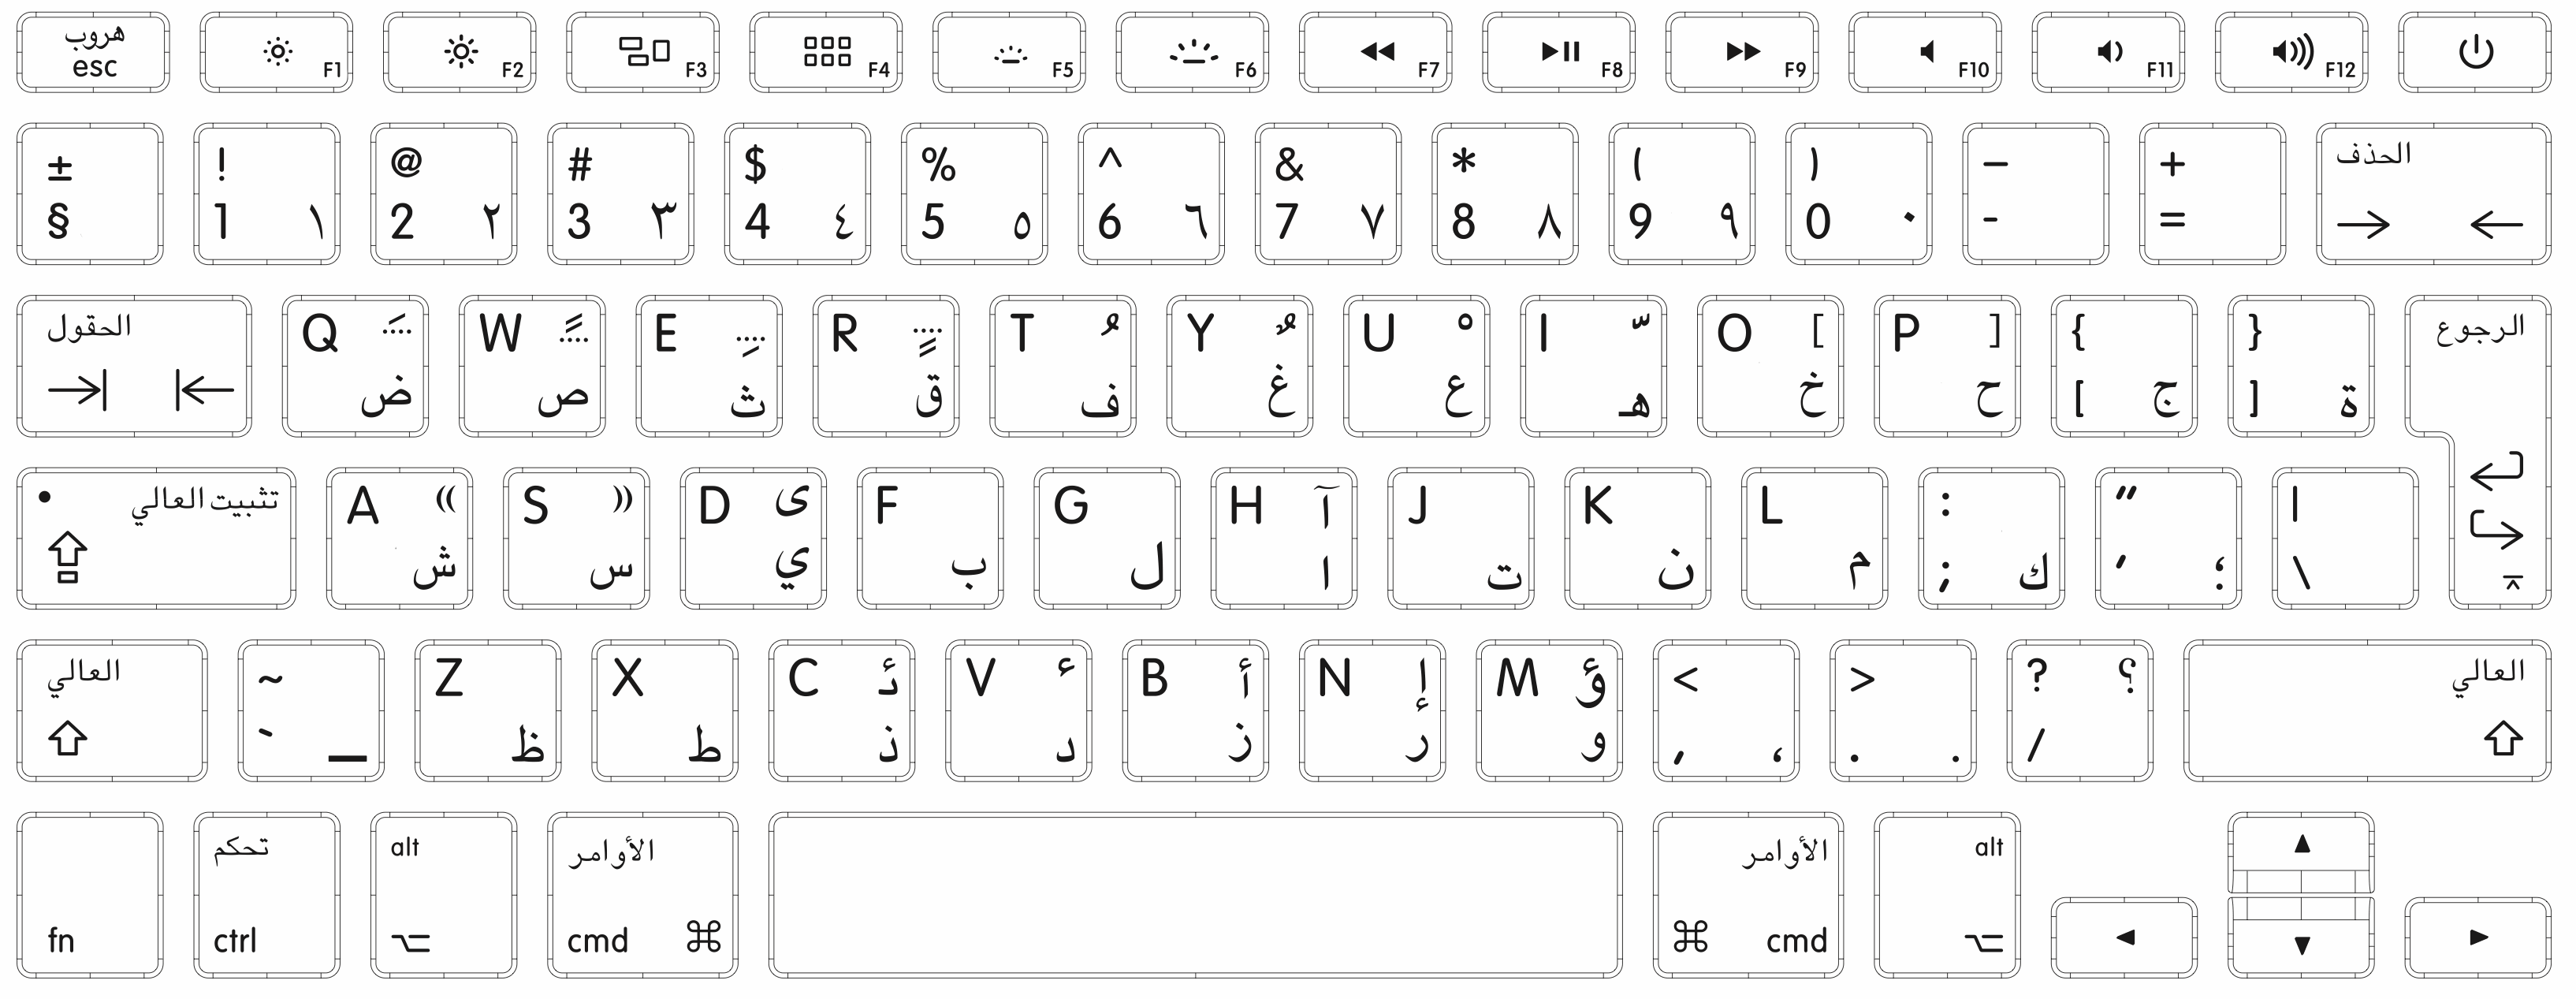 键盘图片字母位置